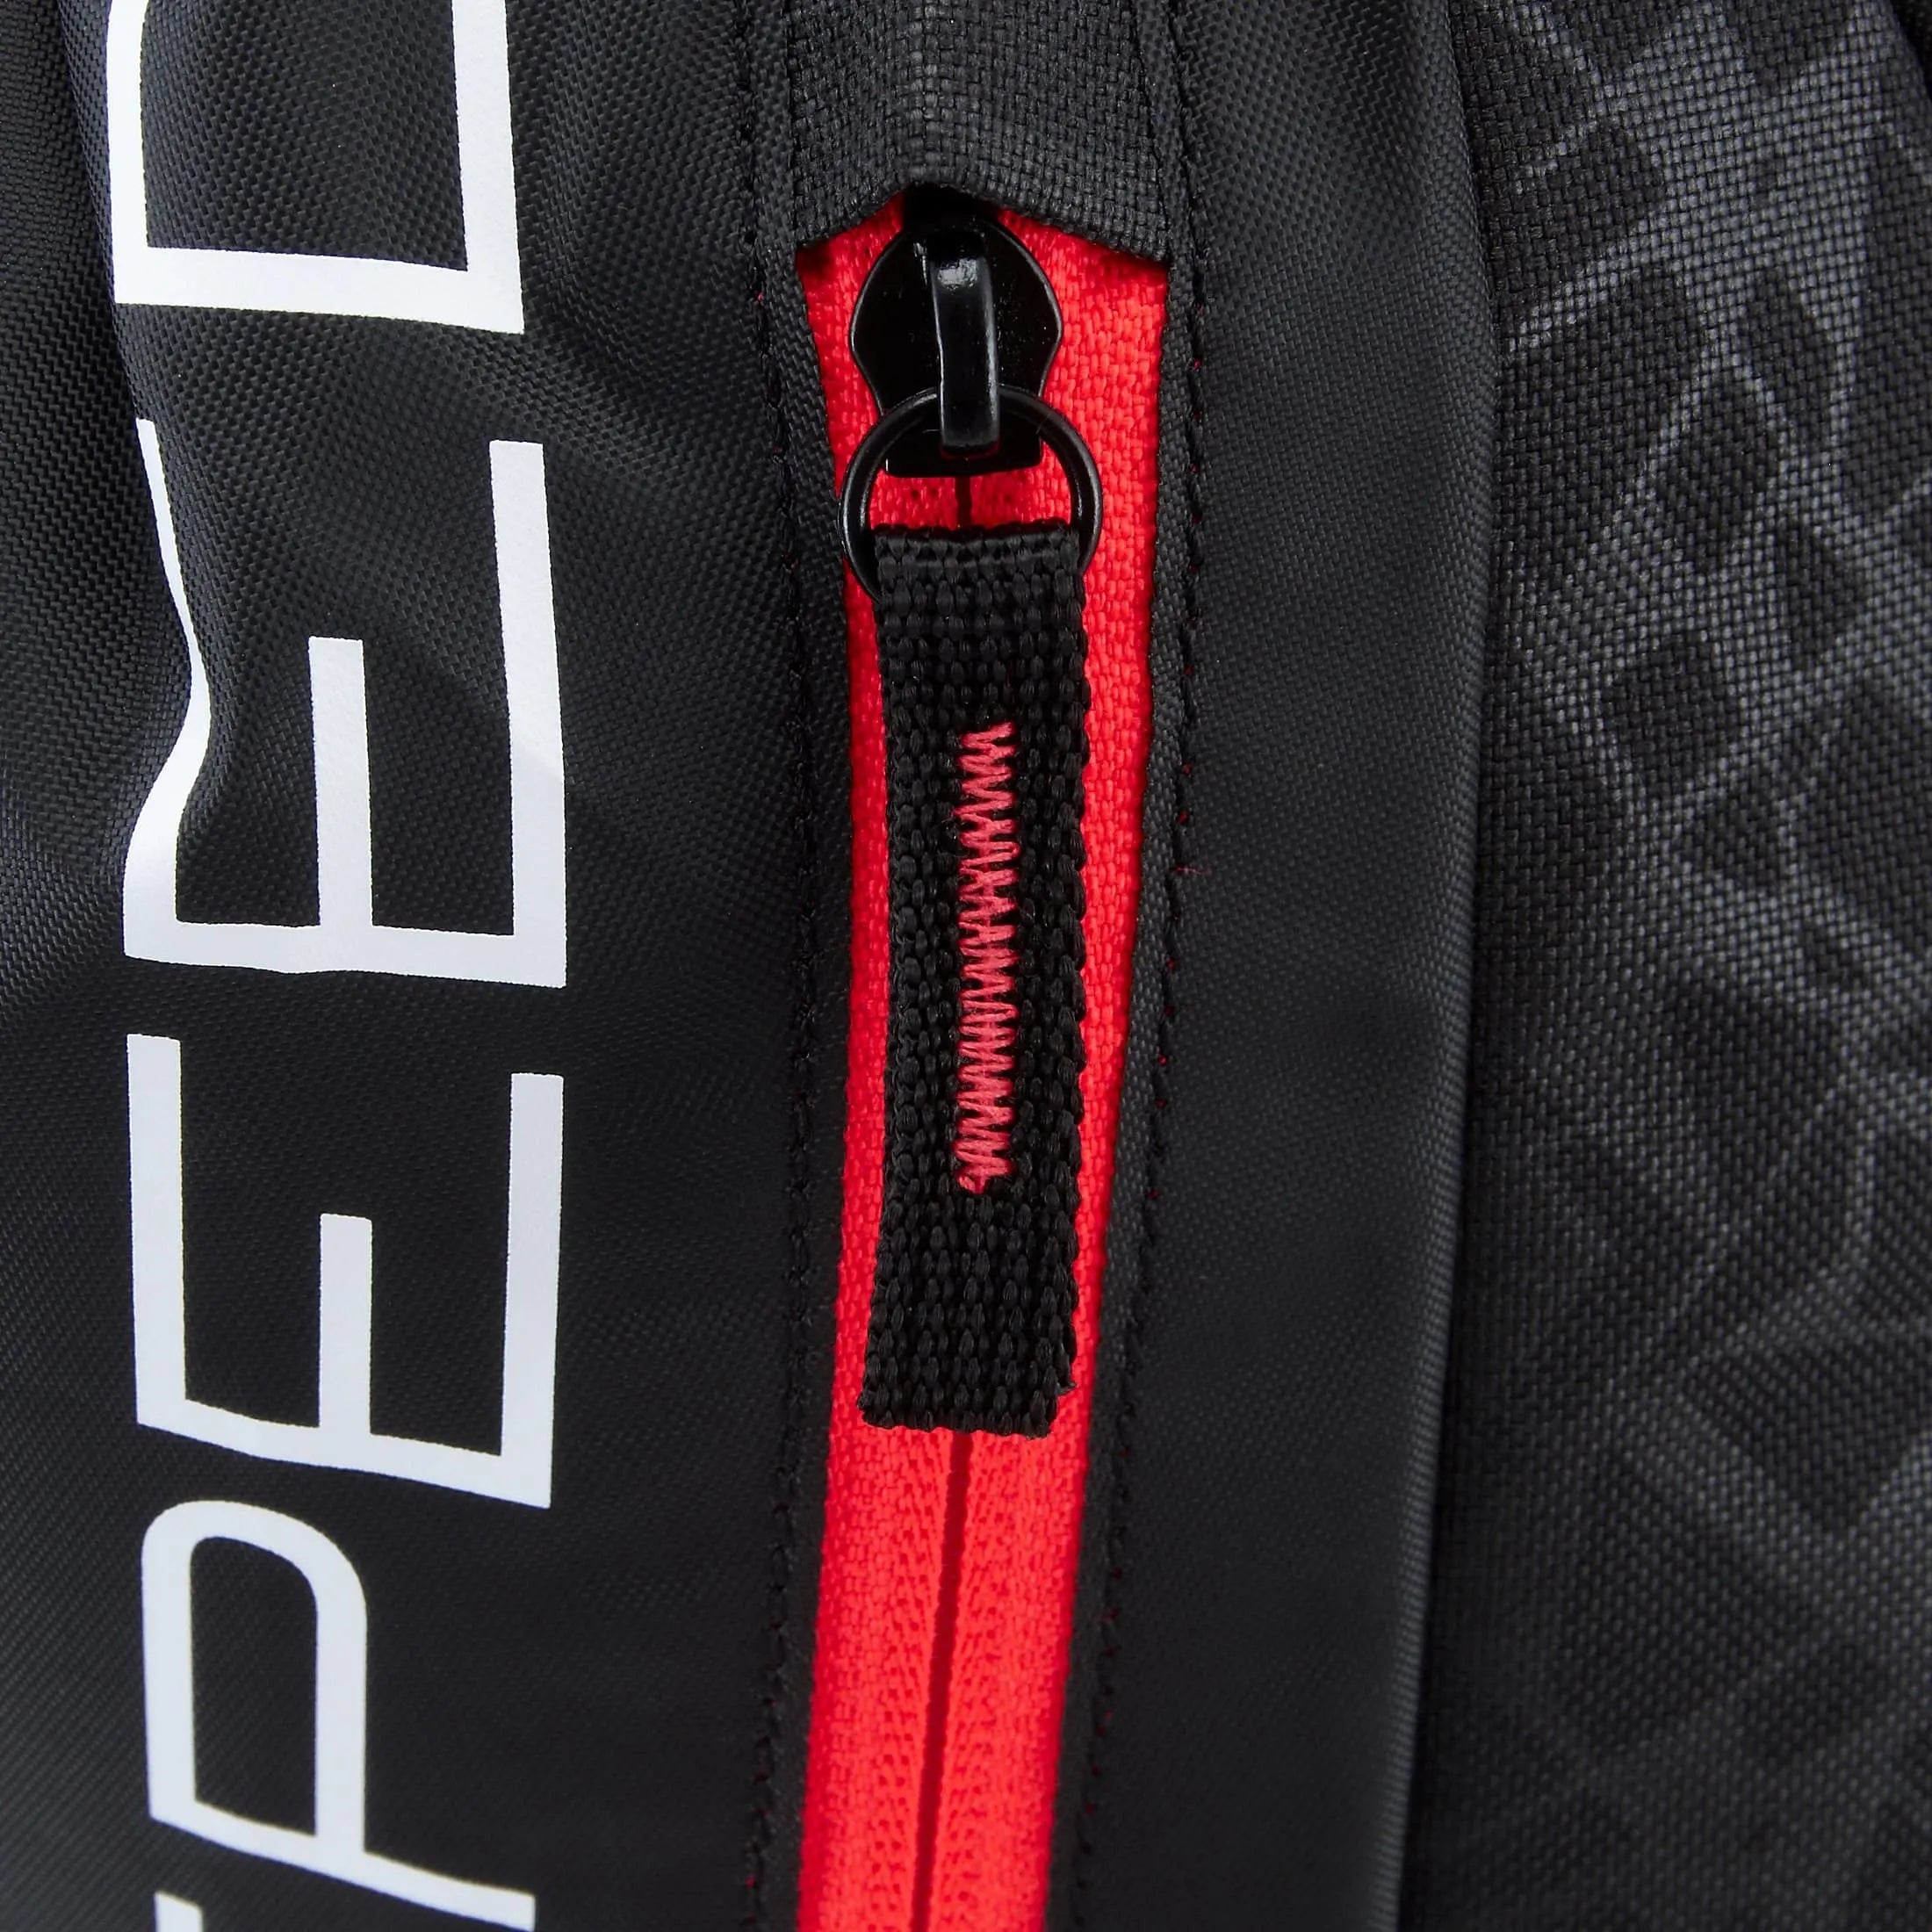 Puma evoSPEED Gym Sack sac de sport 48 cm - noir-rouge